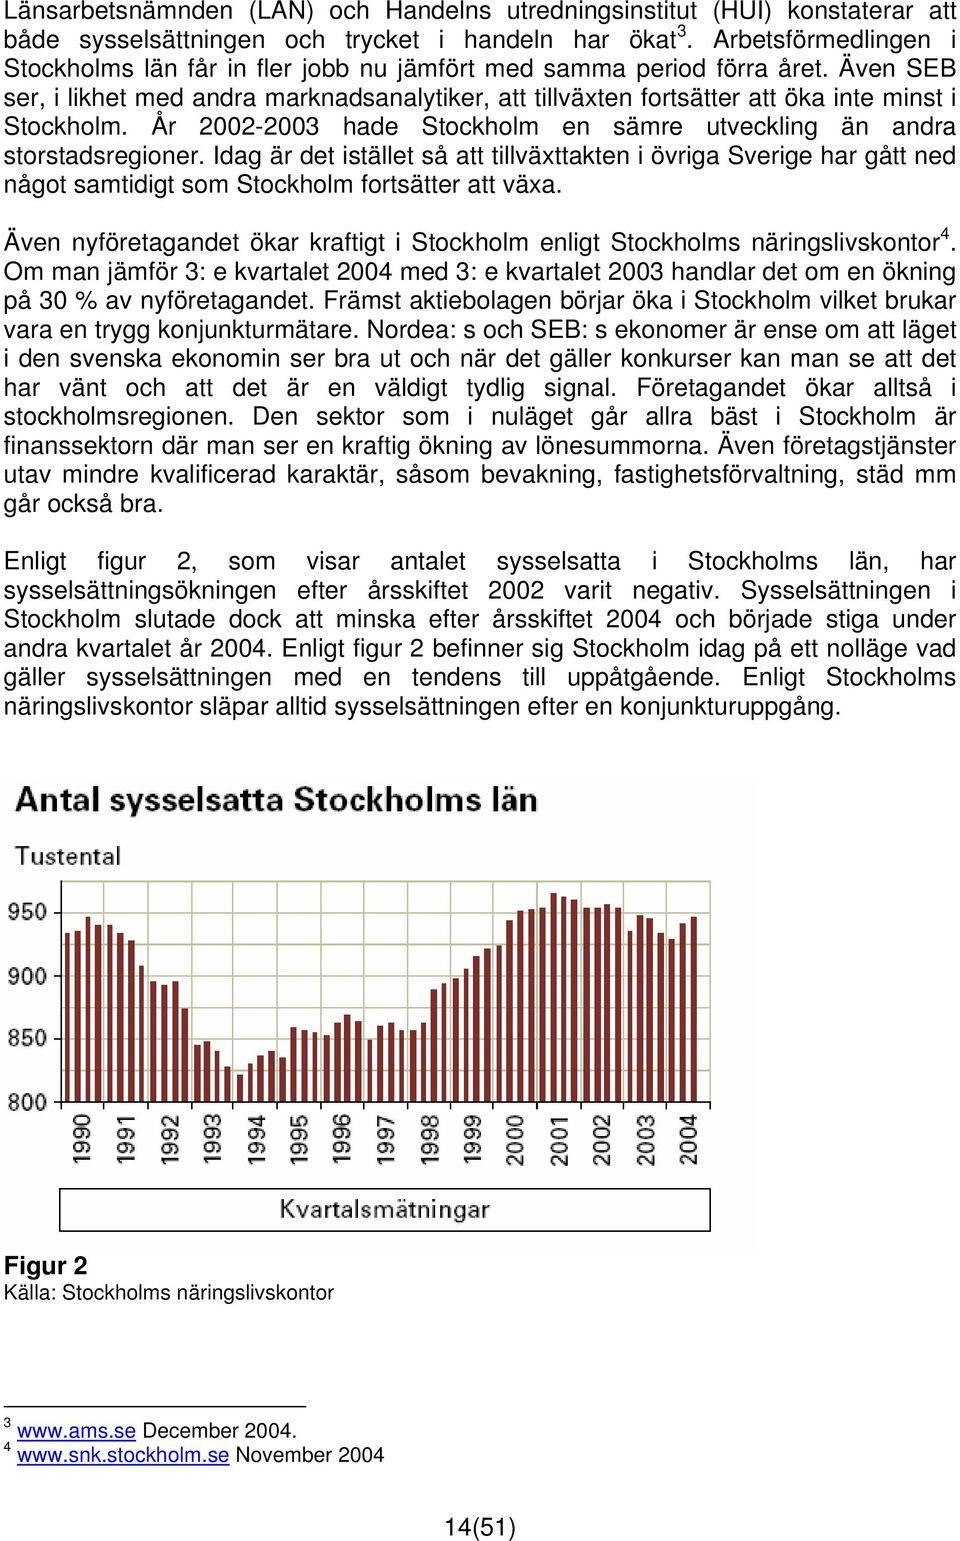 Även SEB ser, i likhet med andra marknadsanalytiker, att tillväxten fortsätter att öka inte minst i Stockholm. År 2002-2003 hade Stockholm en sämre utveckling än andra storstadsregioner.